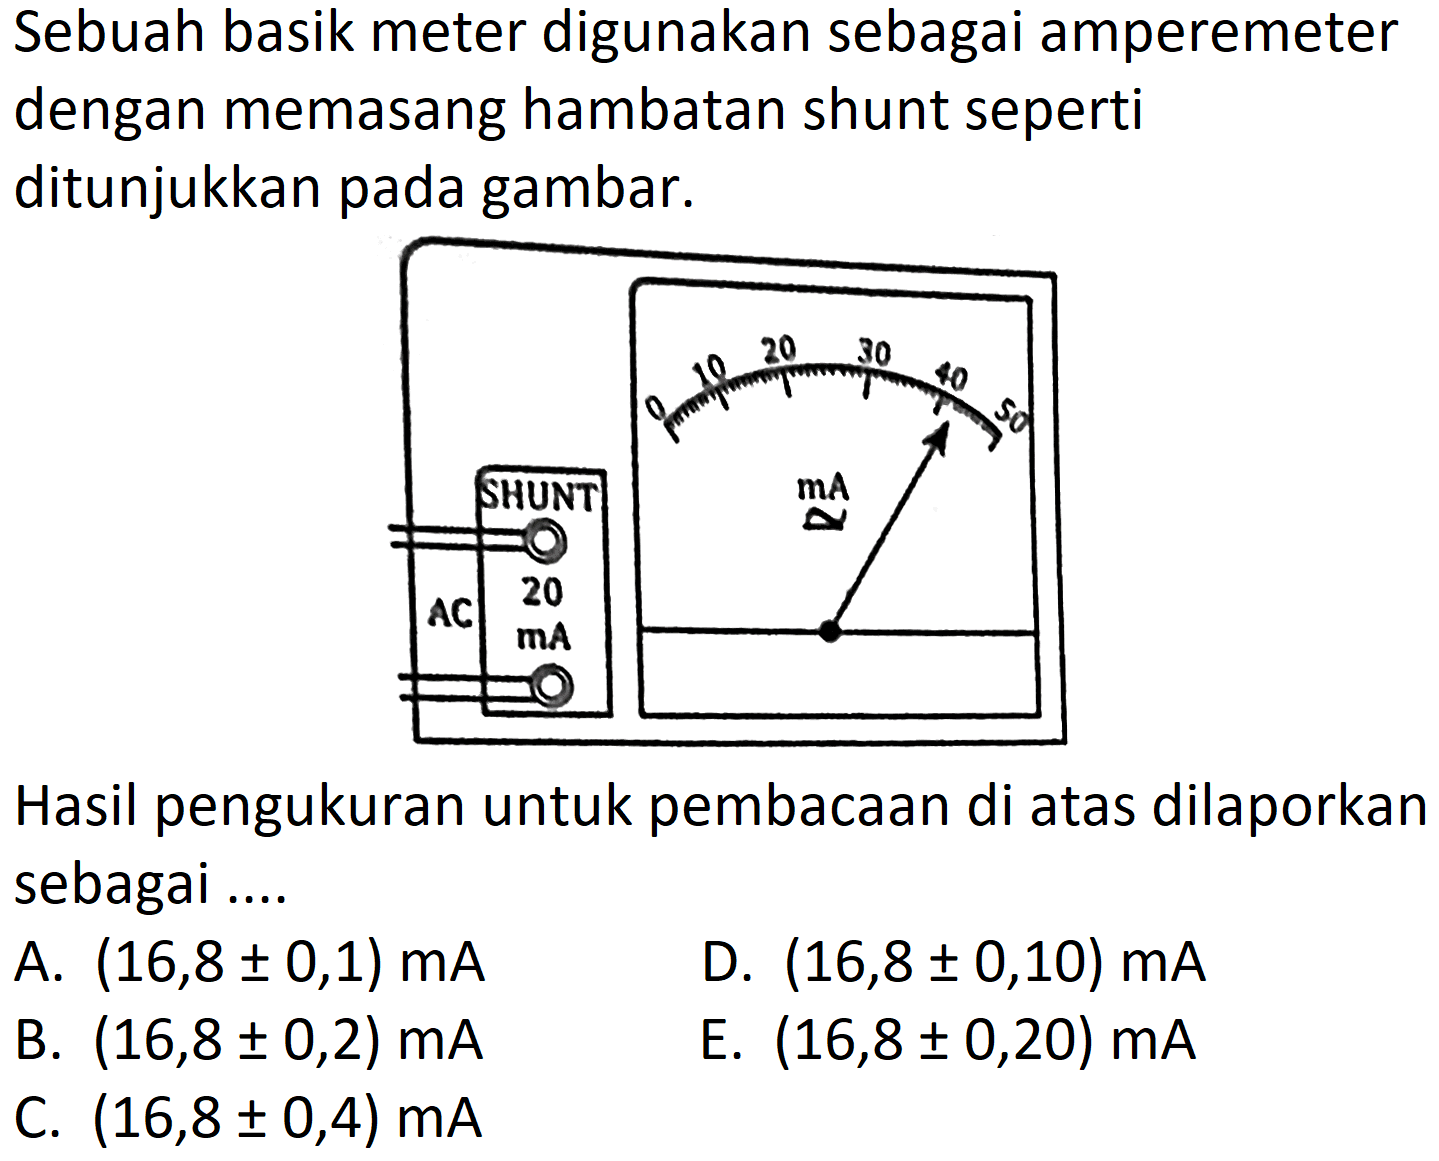 Sebuah basik meter digunakan sebagai amperemeter dengan memasang hambatan shunt seperti ditunjukkan pada gambar. 
AC 20 mA 0 10 20 30 40 50 mA 
Hasil pengukuran untuk pembacaan di atas dilaporkan sebagai ....